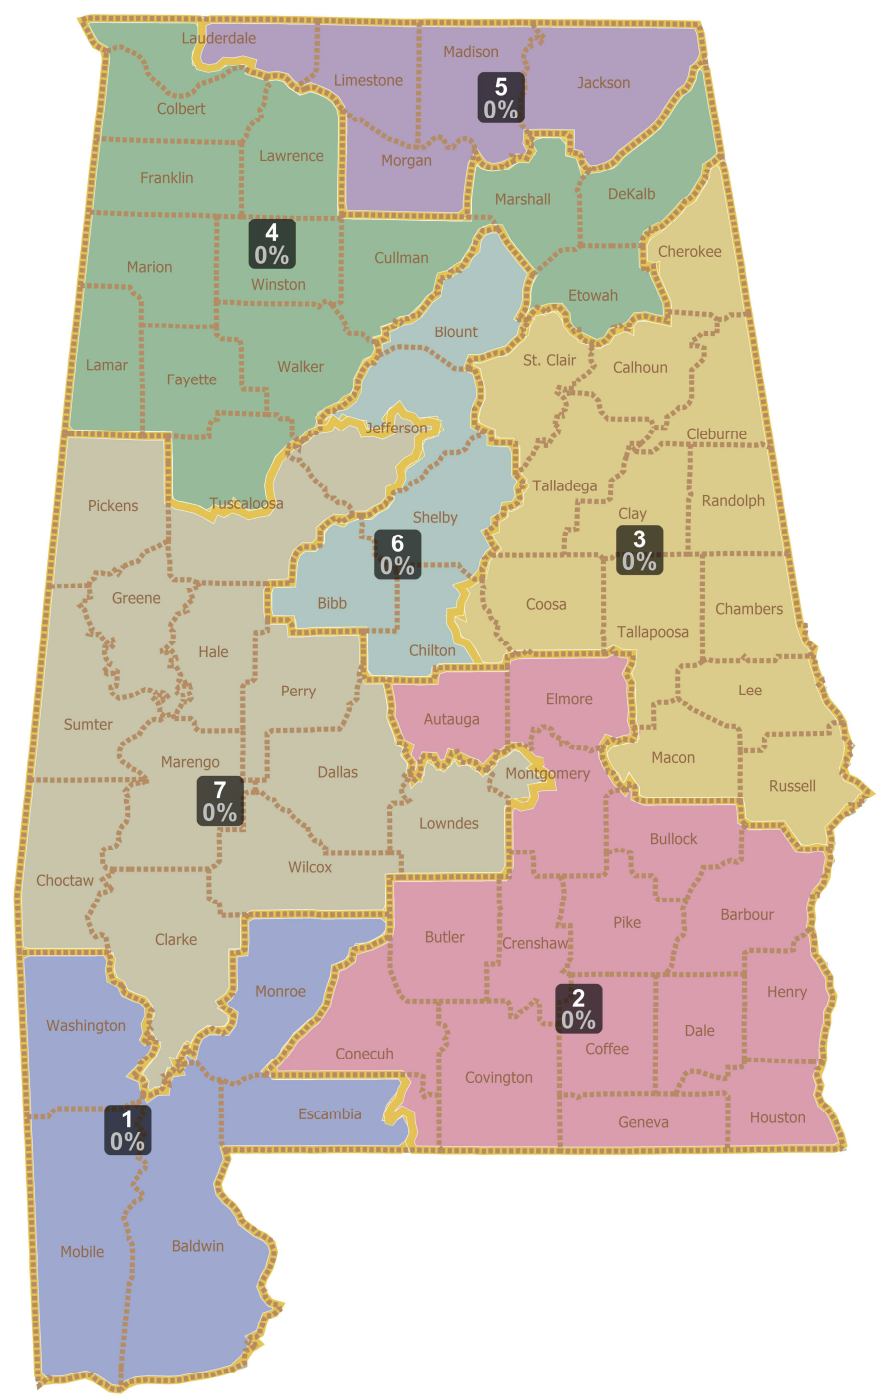 La corte descarta el mapa del Congreso dibujado por el Partido Republicano de Alabama, lo que podría dar a los demócratas otro asiento